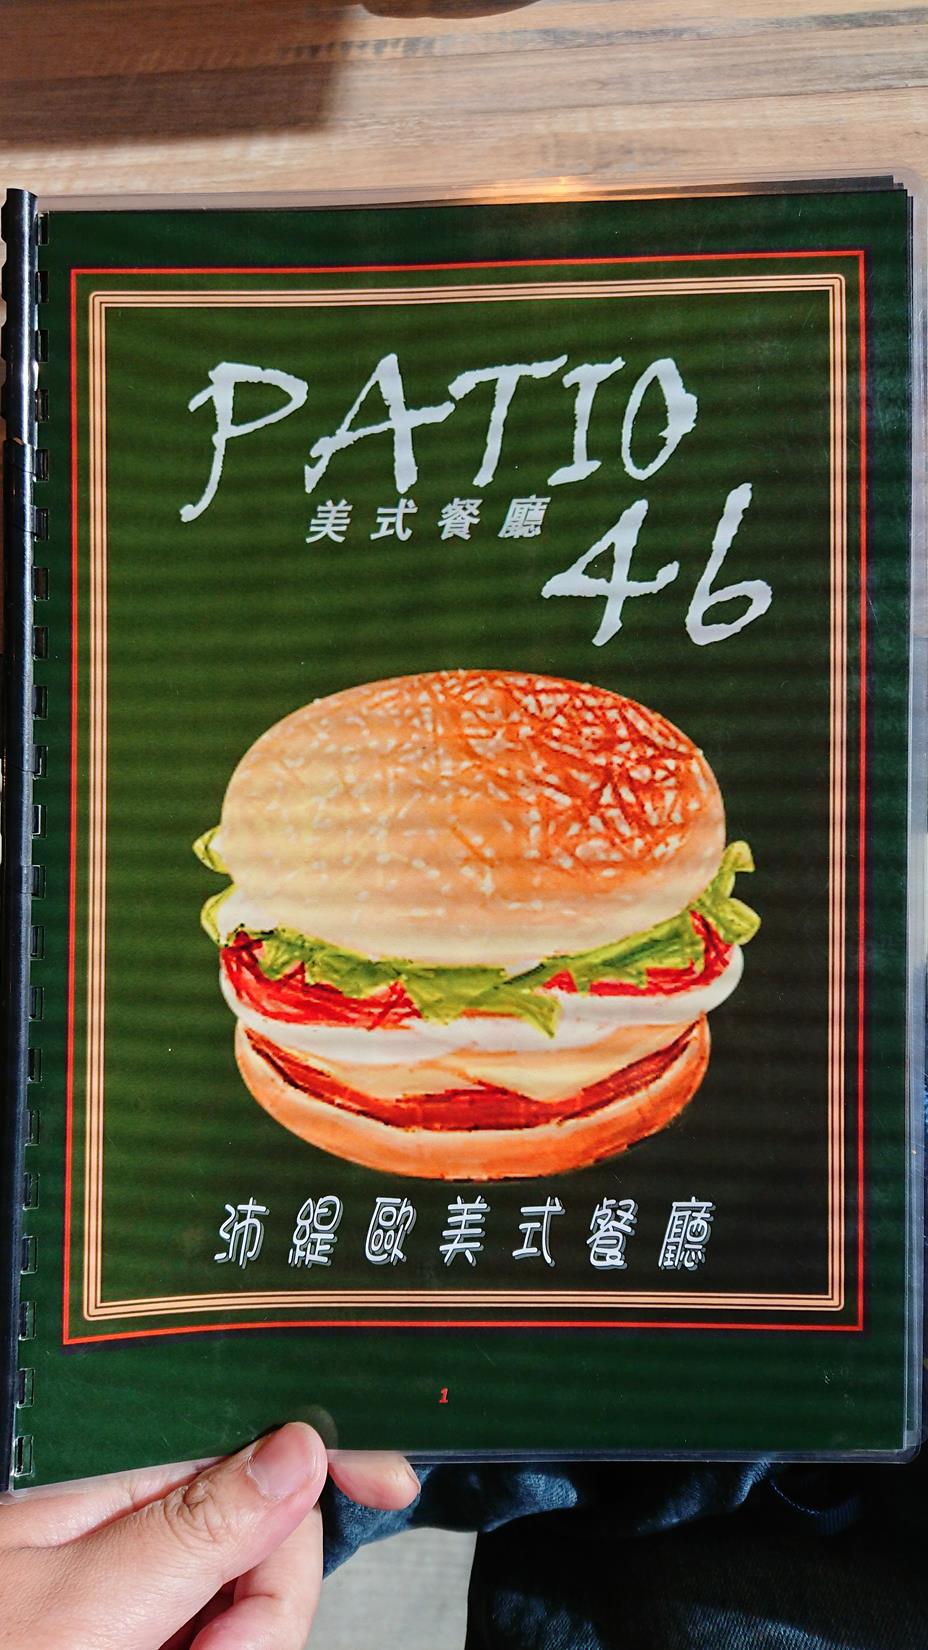 PATIO46 美式餐廳 菜單